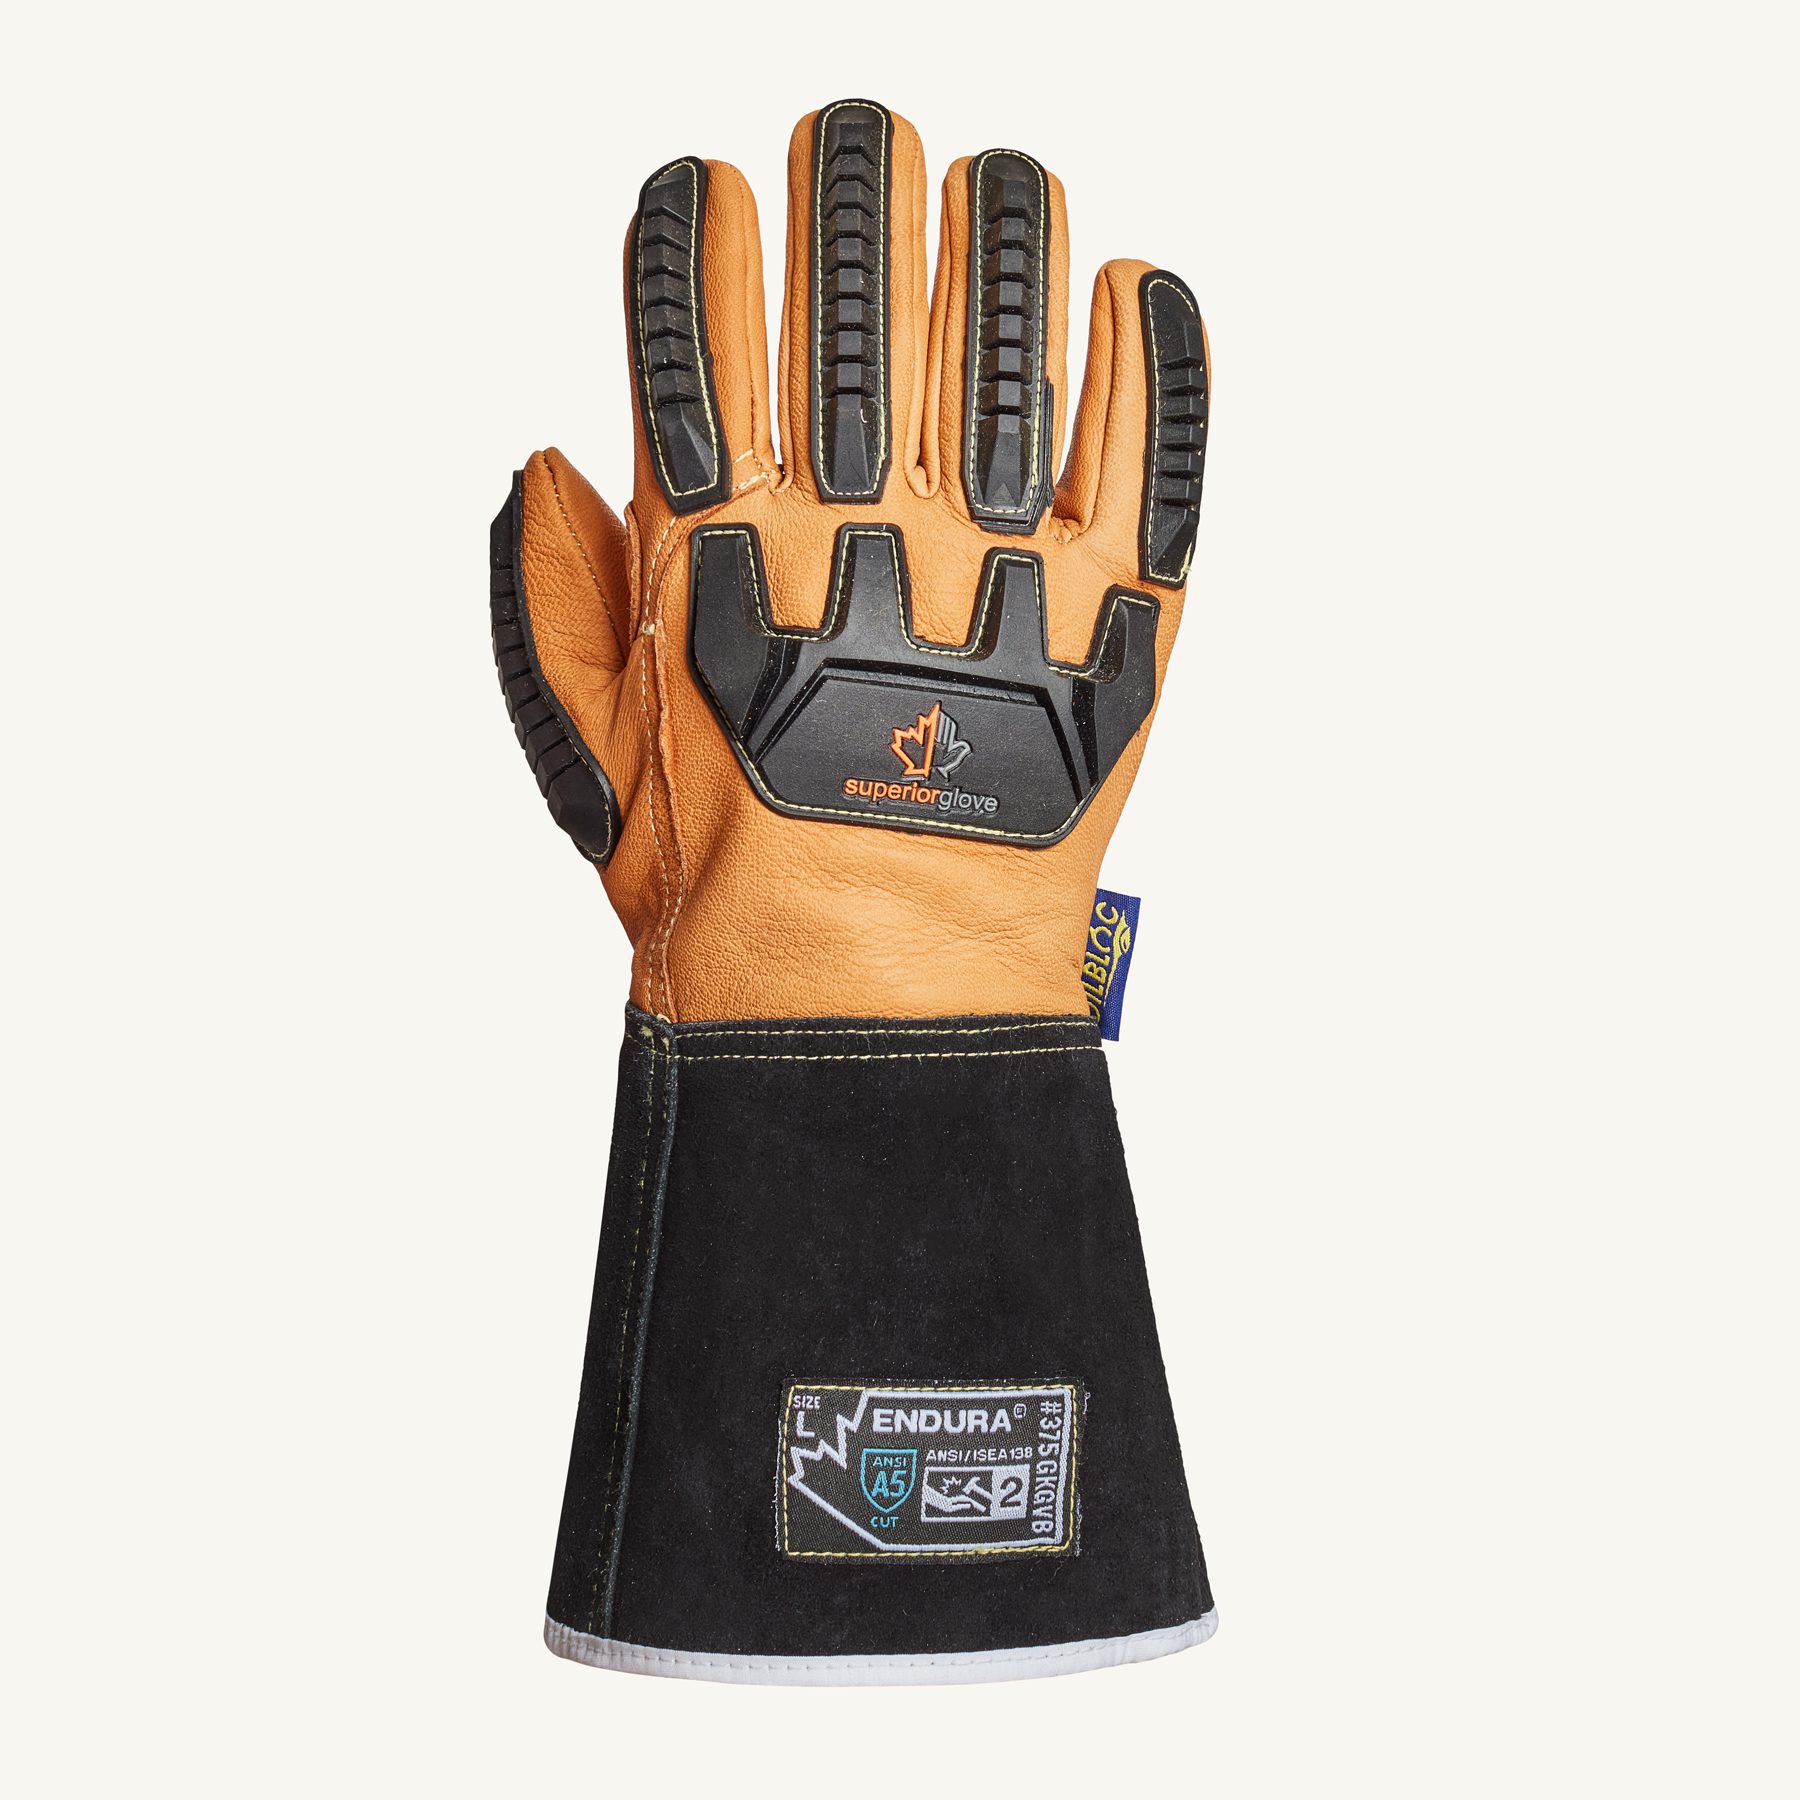 Endura® 375GKGVB - Superior Glove